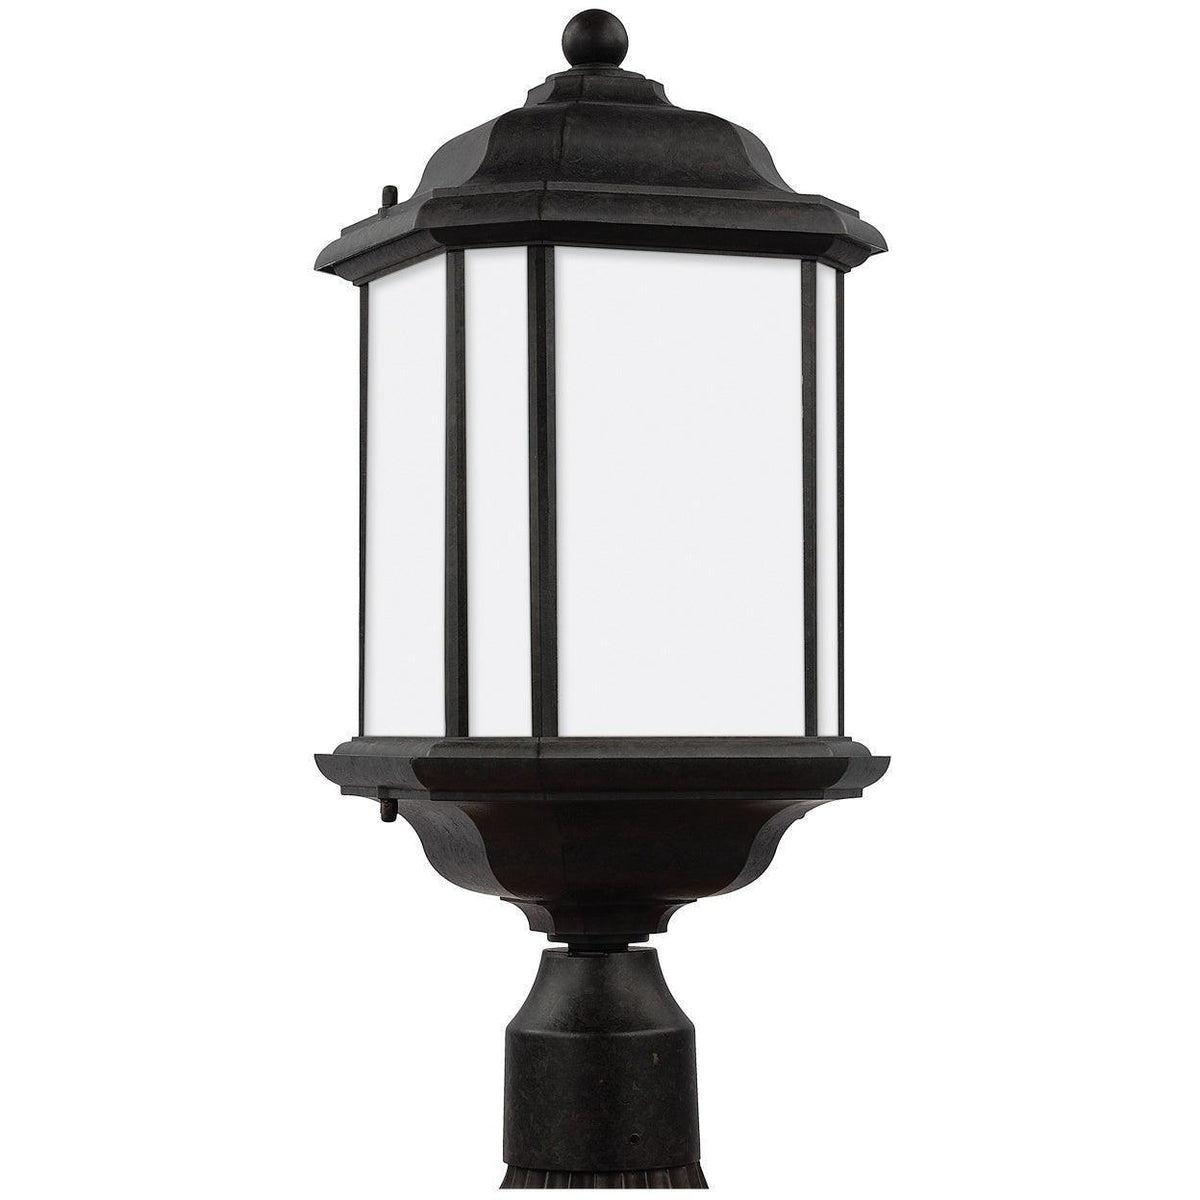 Generation Lighting - Kent Outdoor Post Lantern - 82529-746 | Montreal Lighting & Hardware